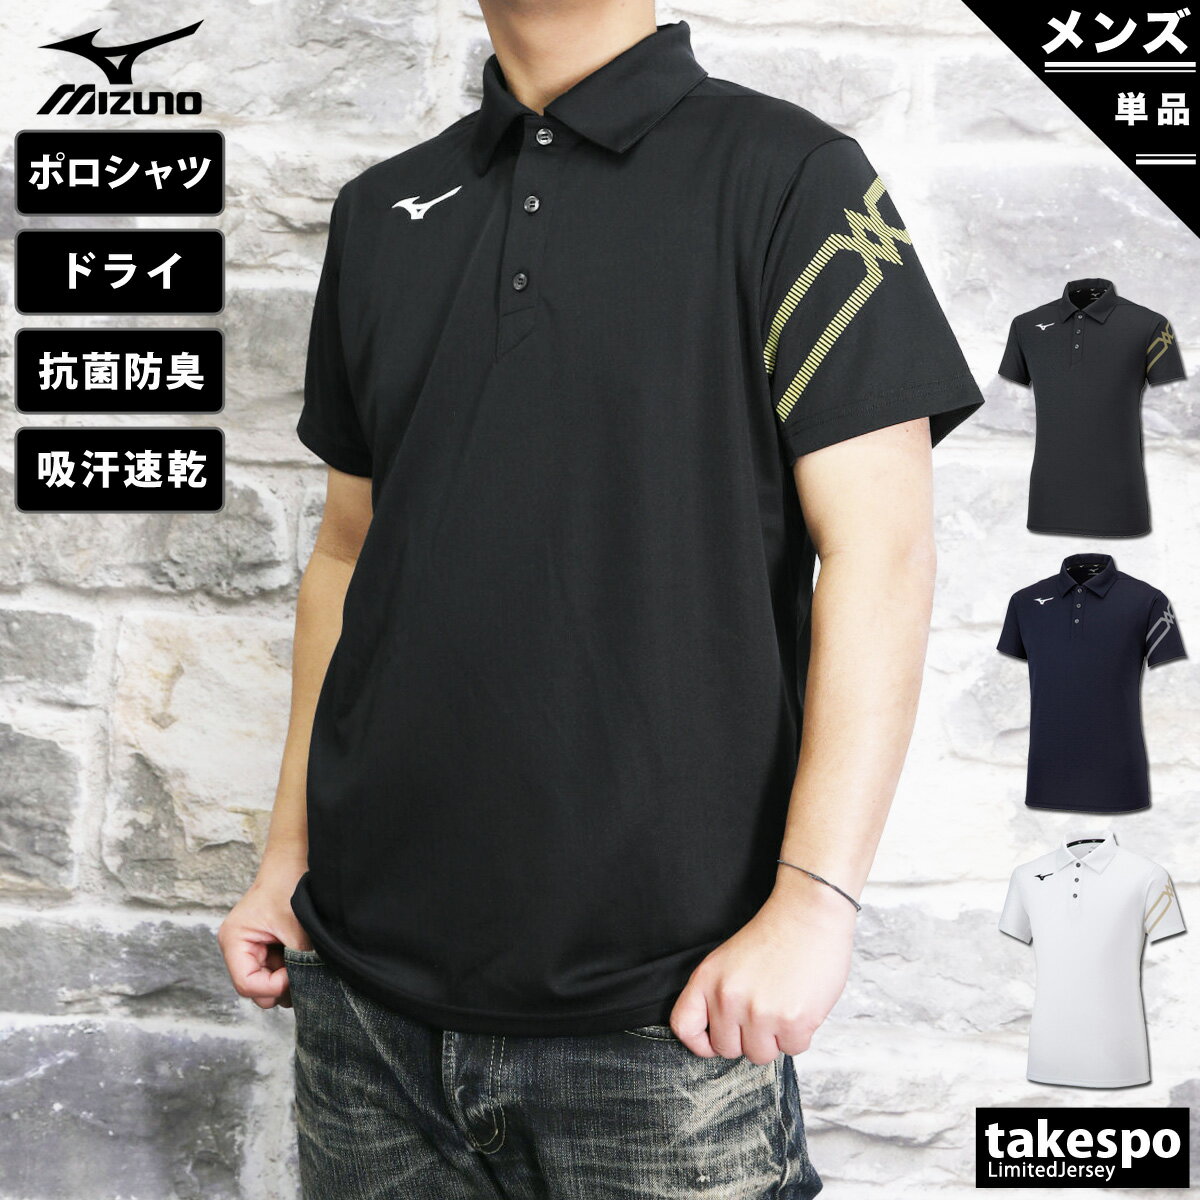 ミズノ 新作 ポロシャツ 上 メンズ Mizuno 半袖 移動着 ドライ ビッグロゴ 吸汗速乾 32MA2176 大きいサイズ 有 ゴルフ スポーツウェア トレーニングウェア ドライ